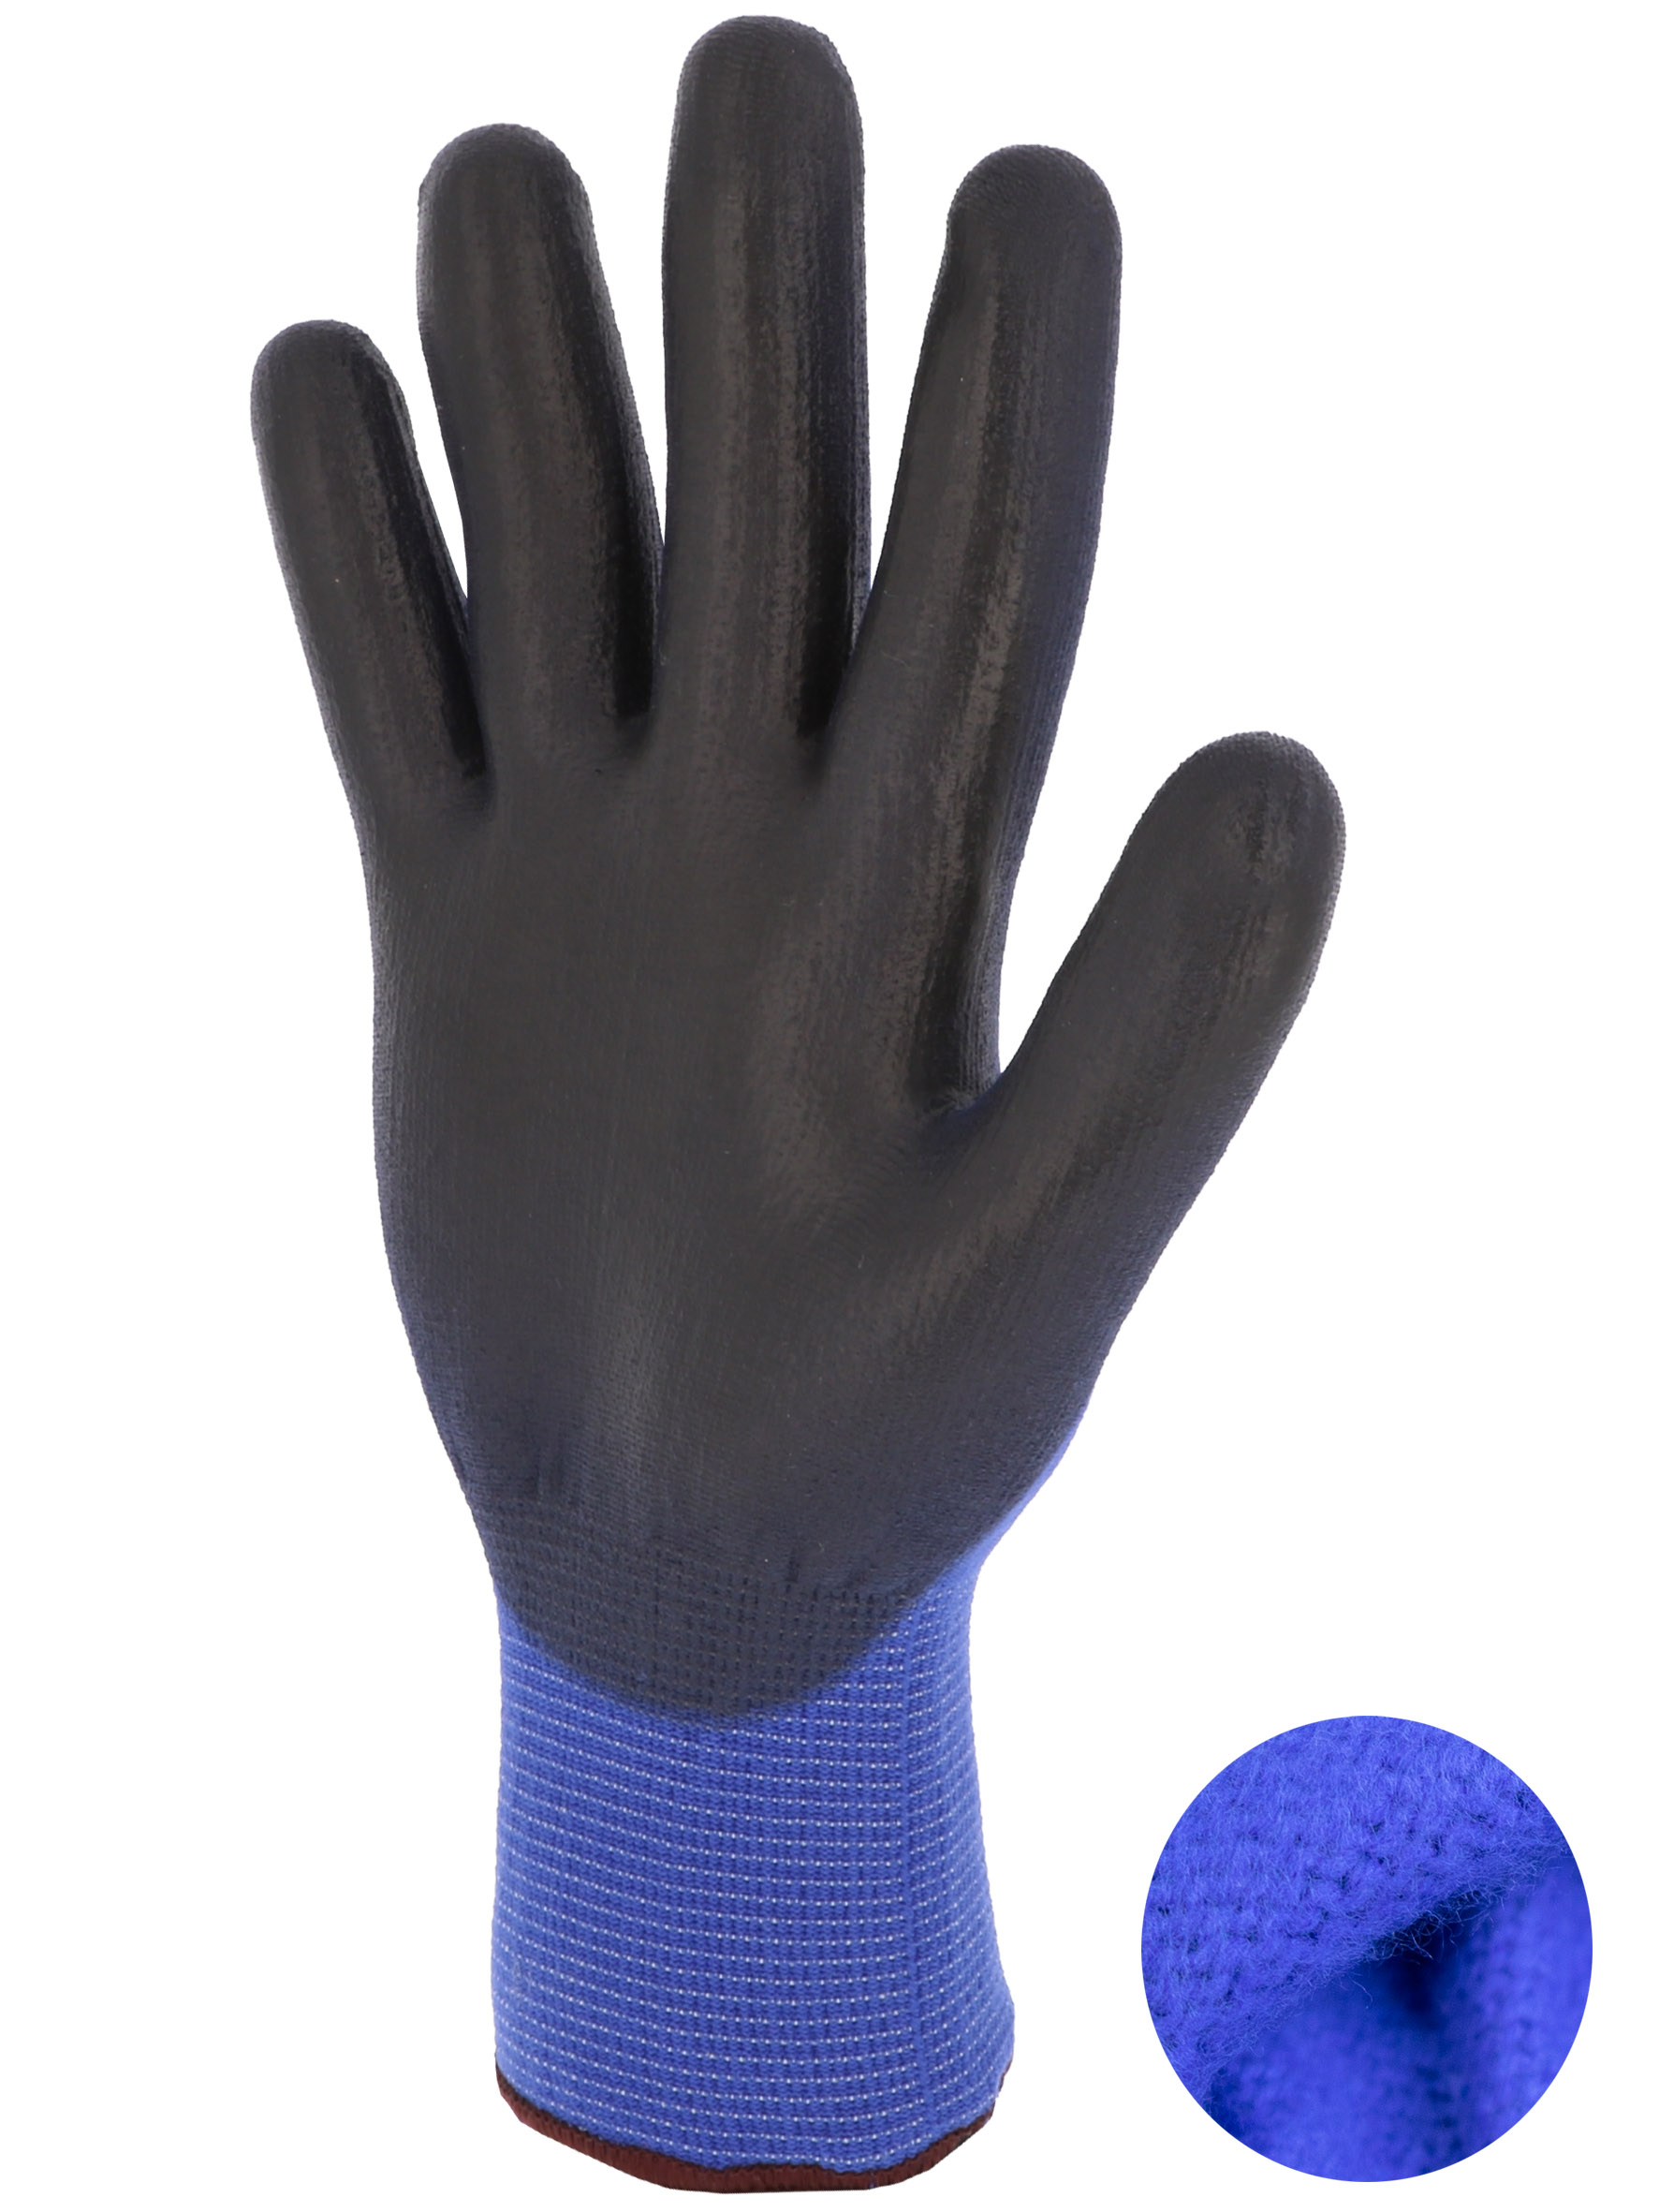 Pour travailler au froid, vous aurez plaisir à enfiler ces gants Doublés en  fourrure acrylique à l'allure chic.